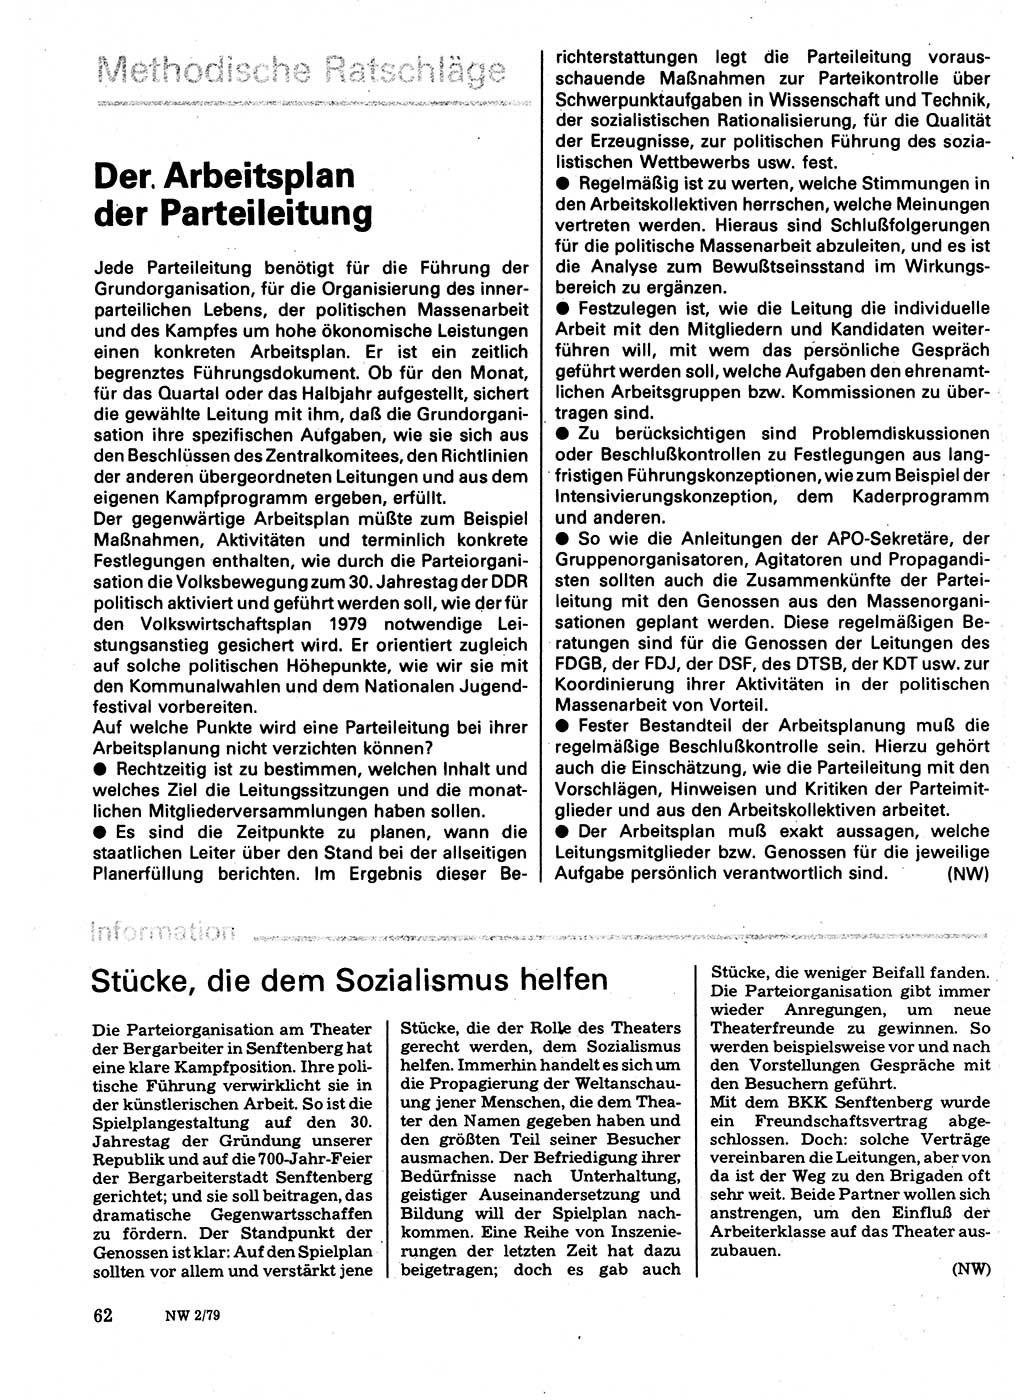 Neuer Weg (NW), Organ des Zentralkomitees (ZK) der SED (Sozialistische Einheitspartei Deutschlands) für Fragen des Parteilebens, 34. Jahrgang [Deutsche Demokratische Republik (DDR)] 1979, Seite 62 (NW ZK SED DDR 1979, S. 62)